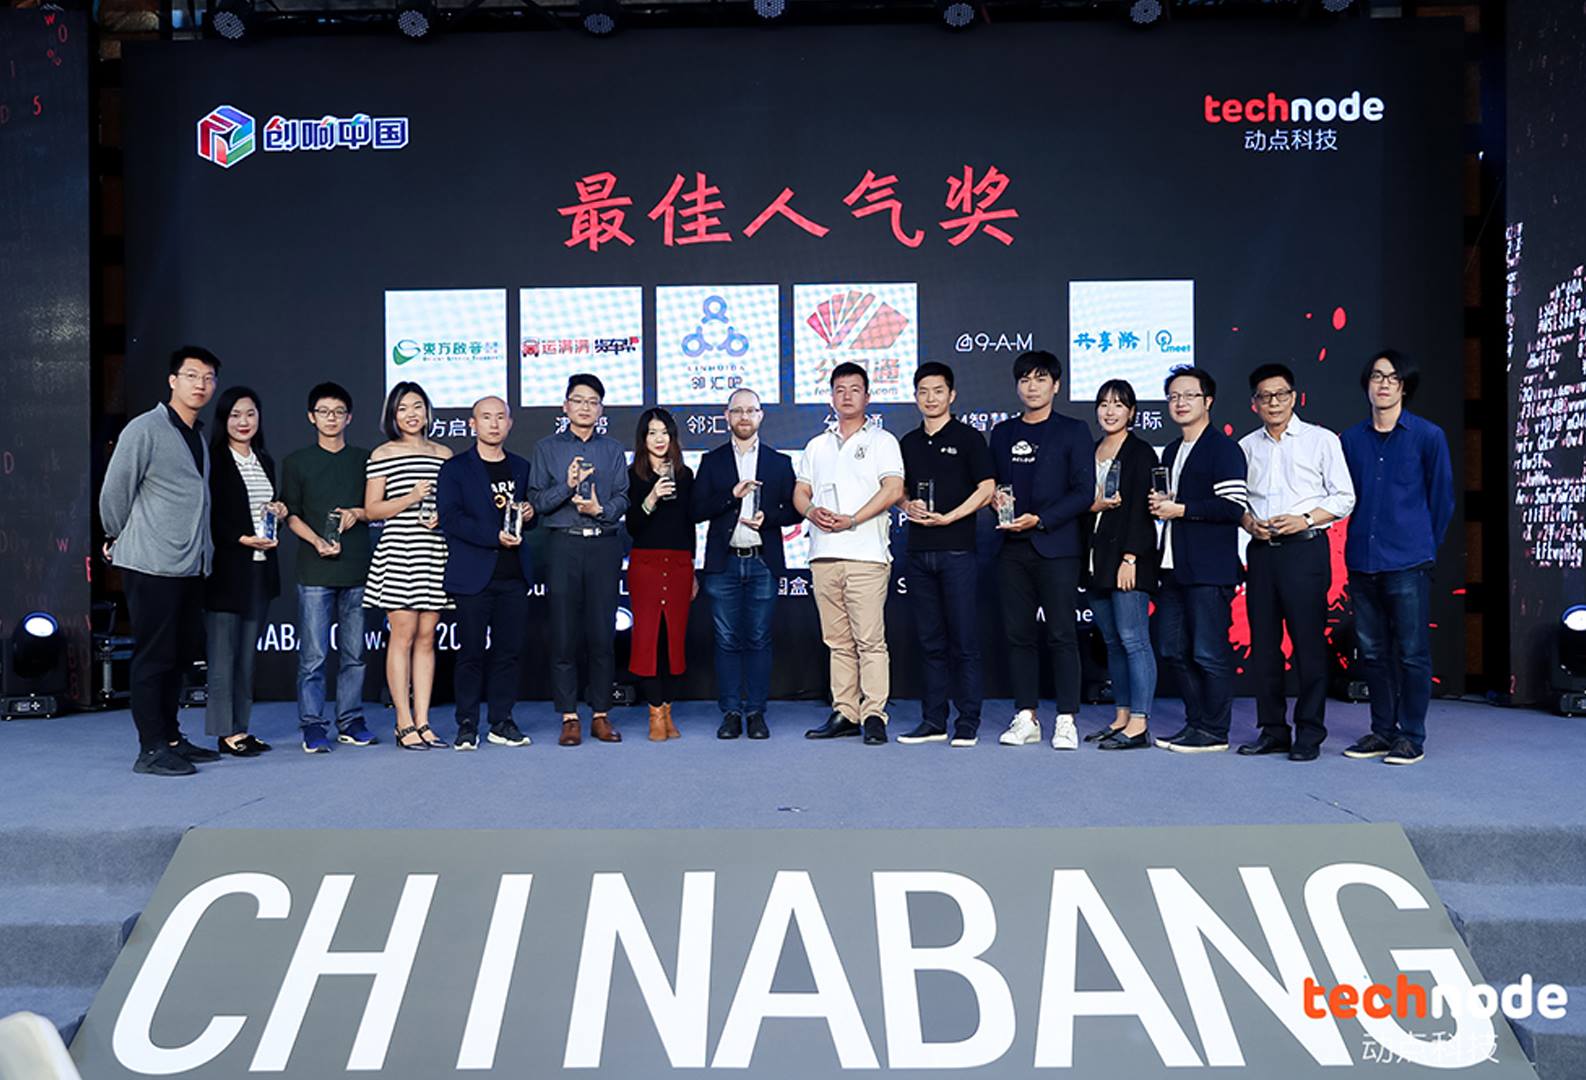 တရုတ်နိုင်ငံမှ အောင်မြင်သော Startup ခြောက်ခု